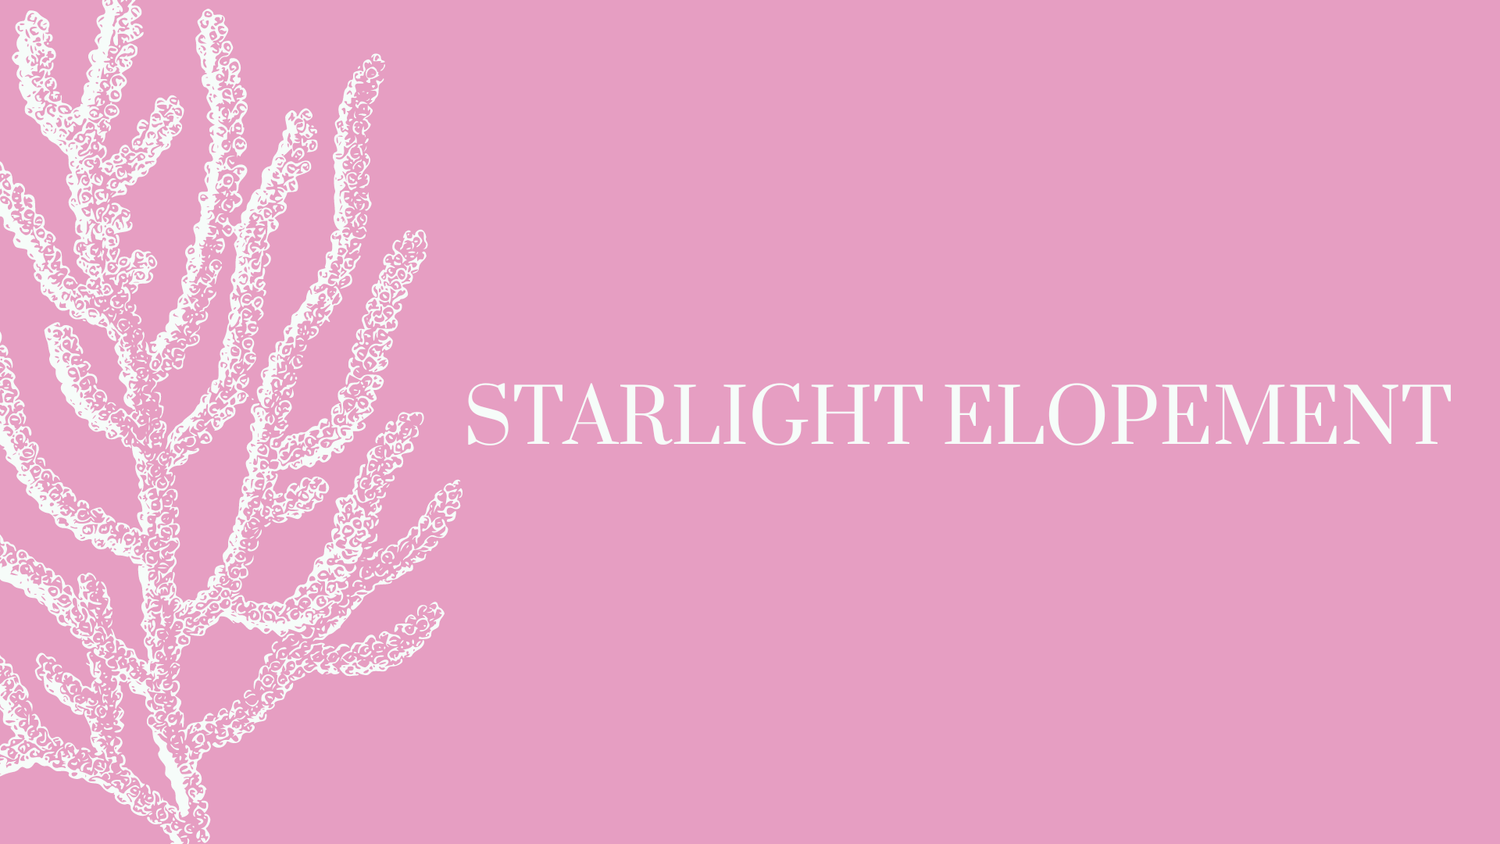 Starlight Elopement